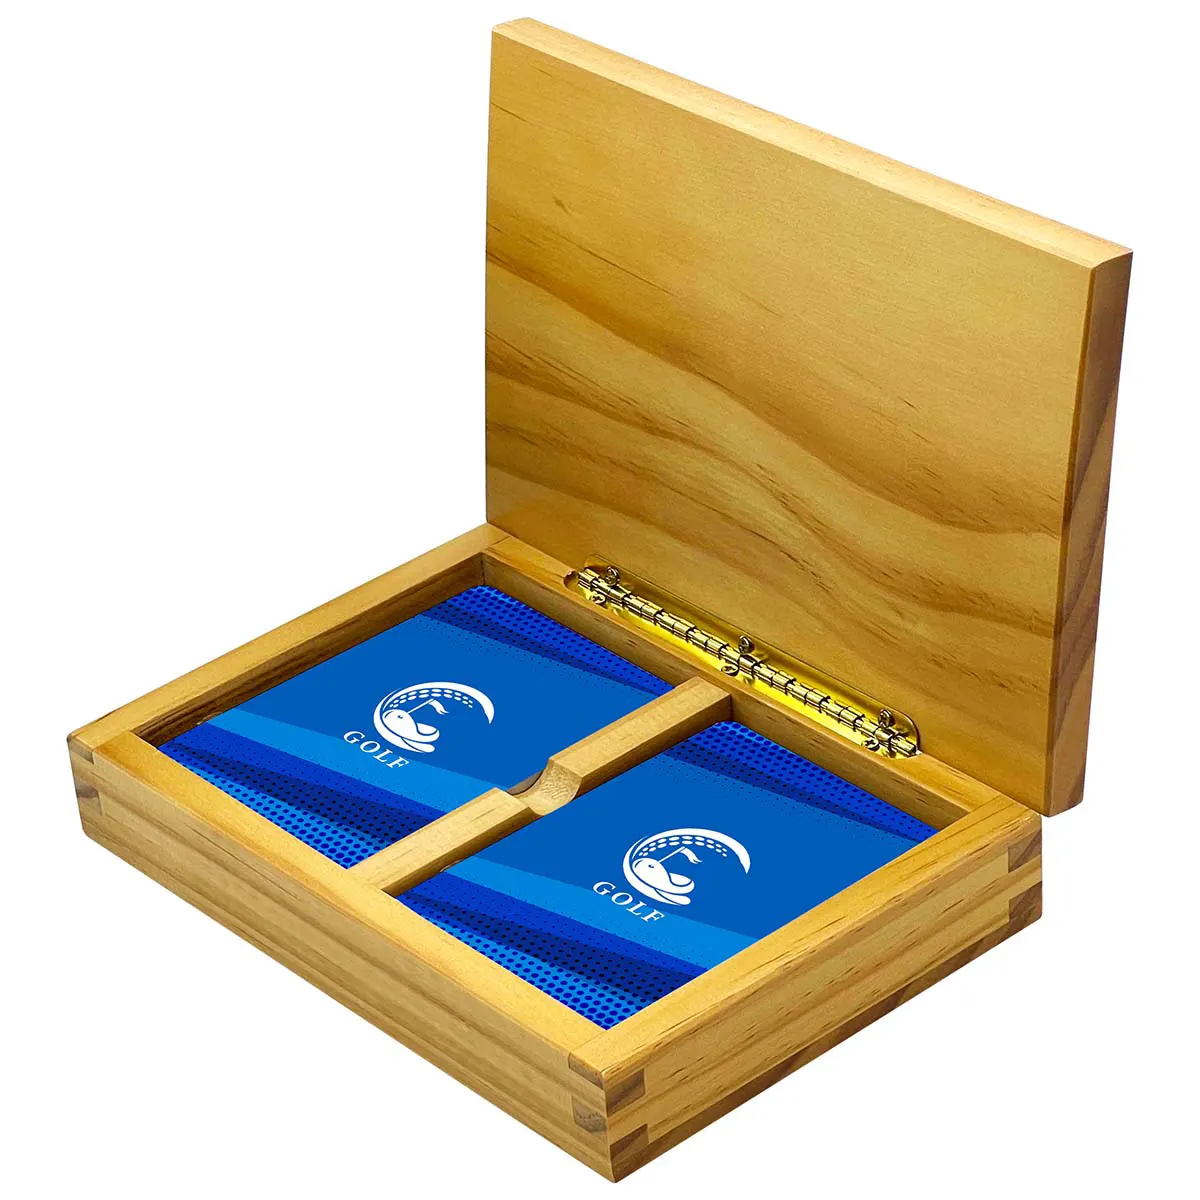 Caixa de madeira para cartas de baralho de 2 baralhos